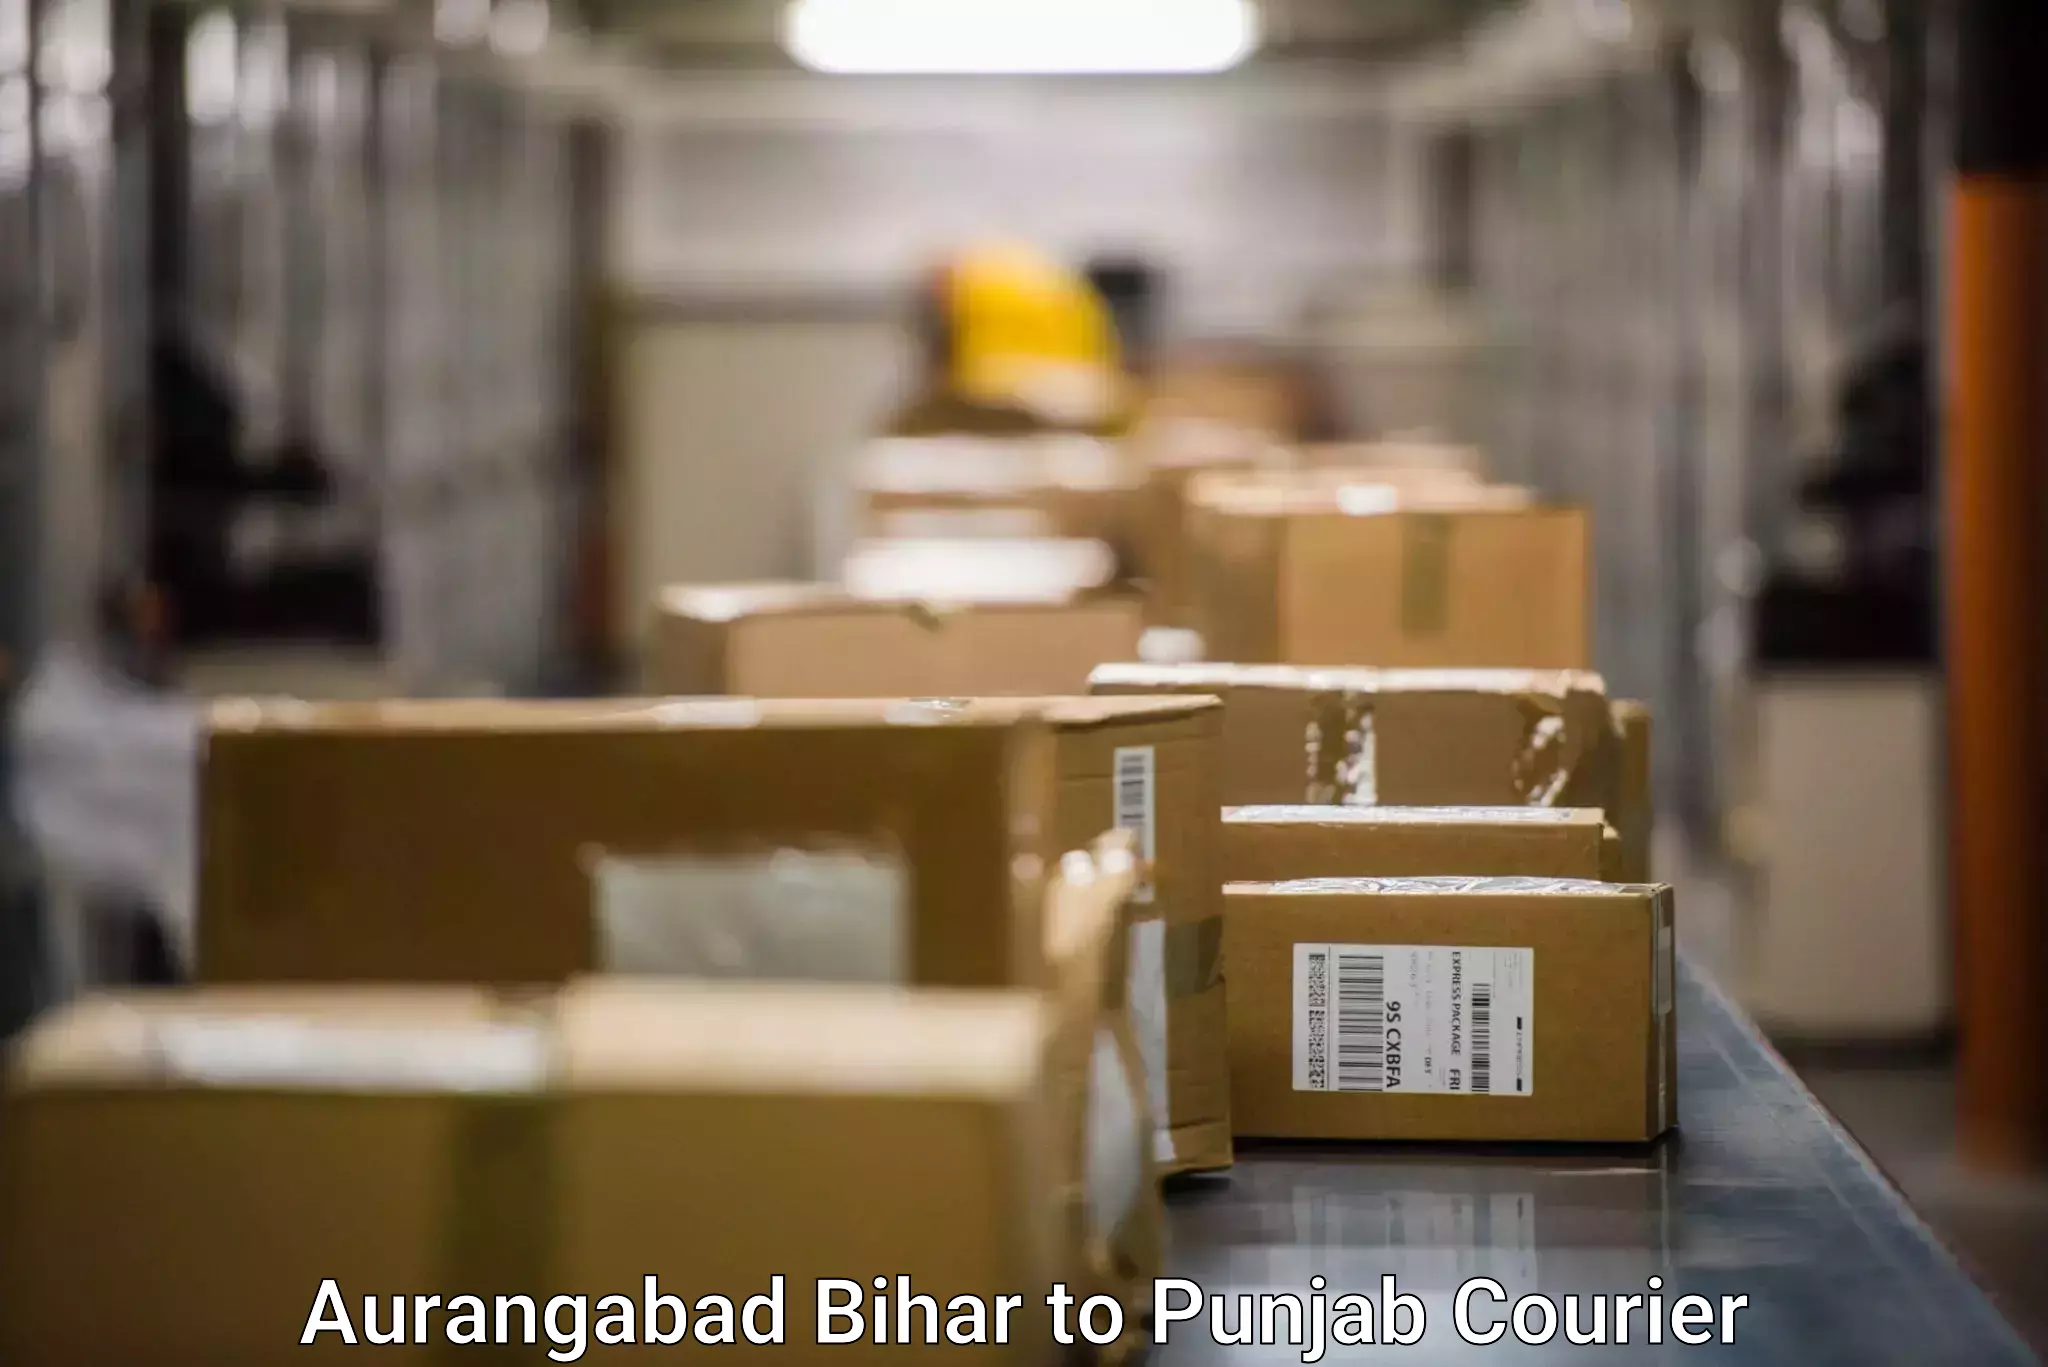 Doorstep parcel pickup in Aurangabad Bihar to Ajnala